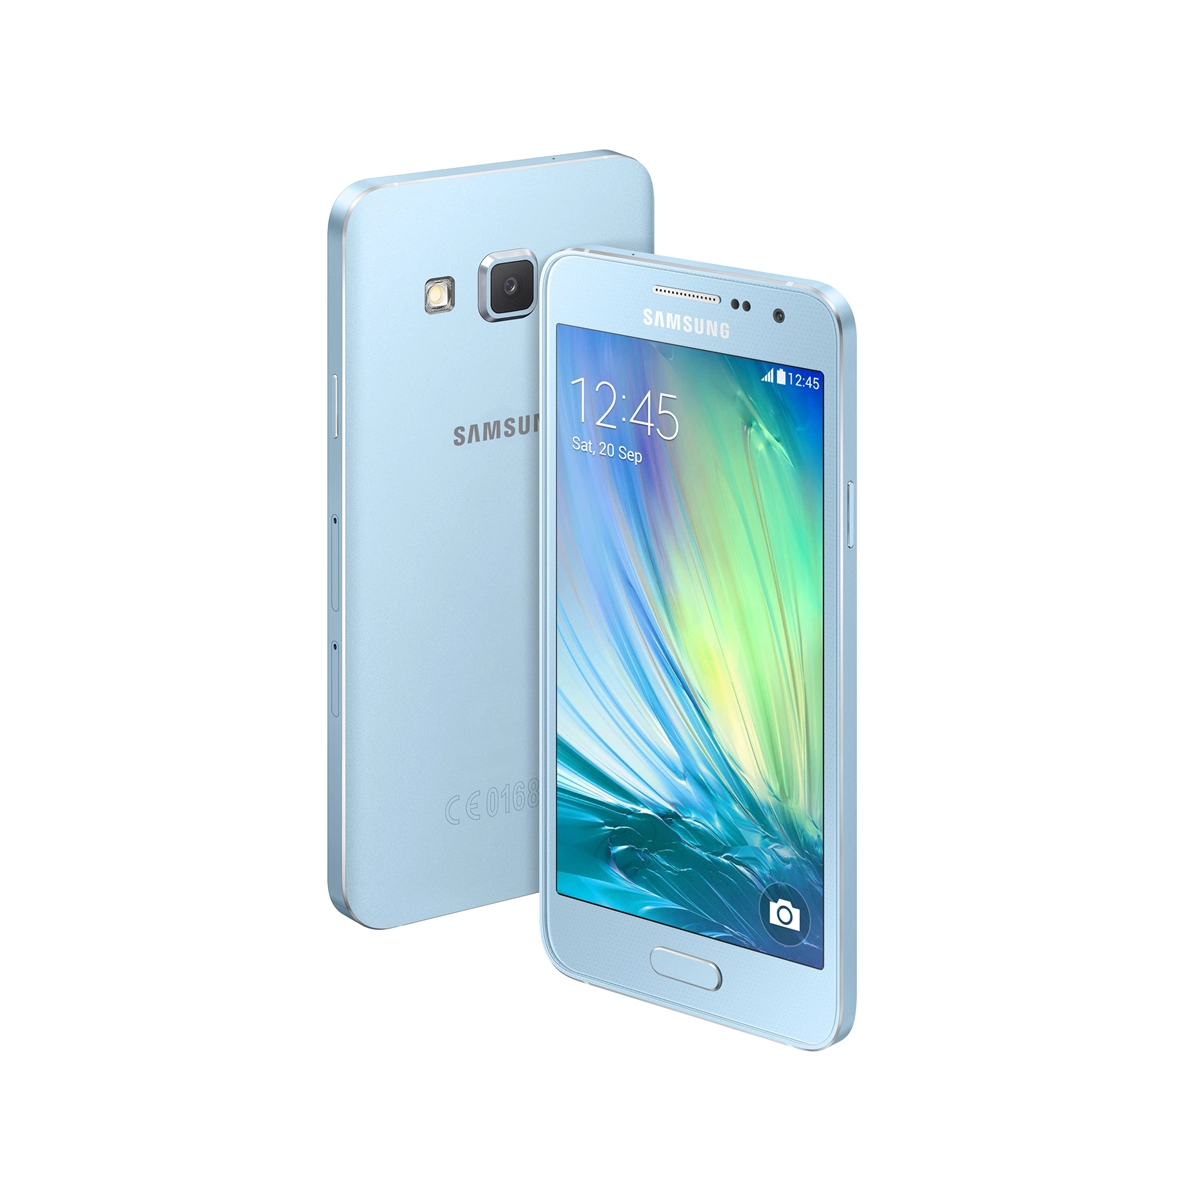 Samsung Galaxy A3 (A300Y) - Good Condition